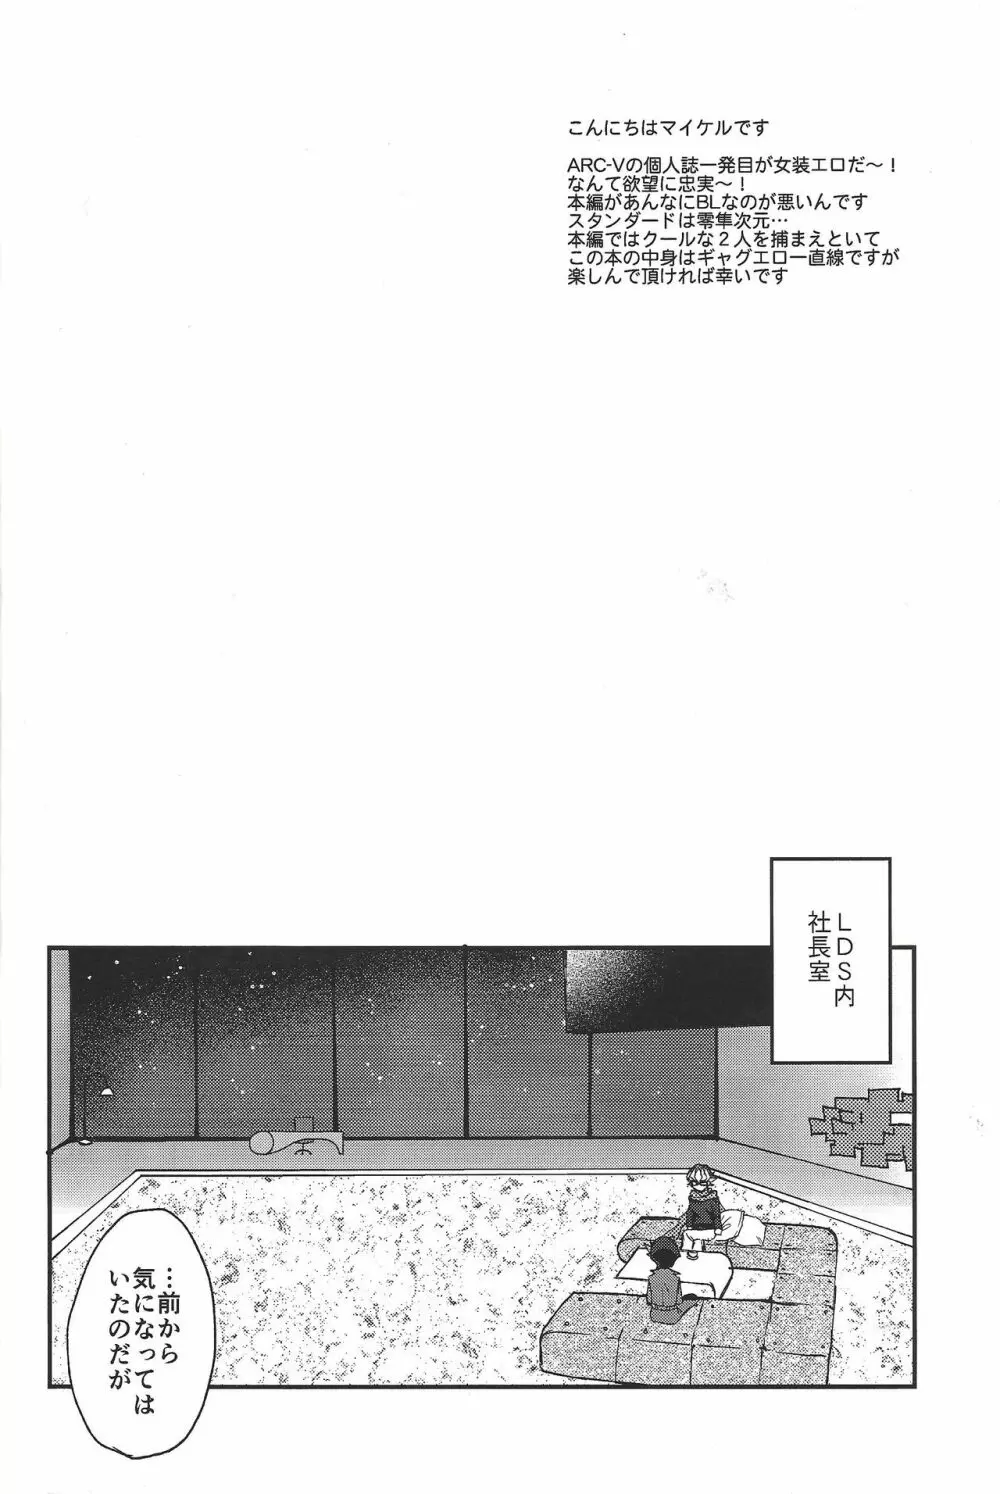 Hangyaku no tsubasa meido raputāzu 3ページ